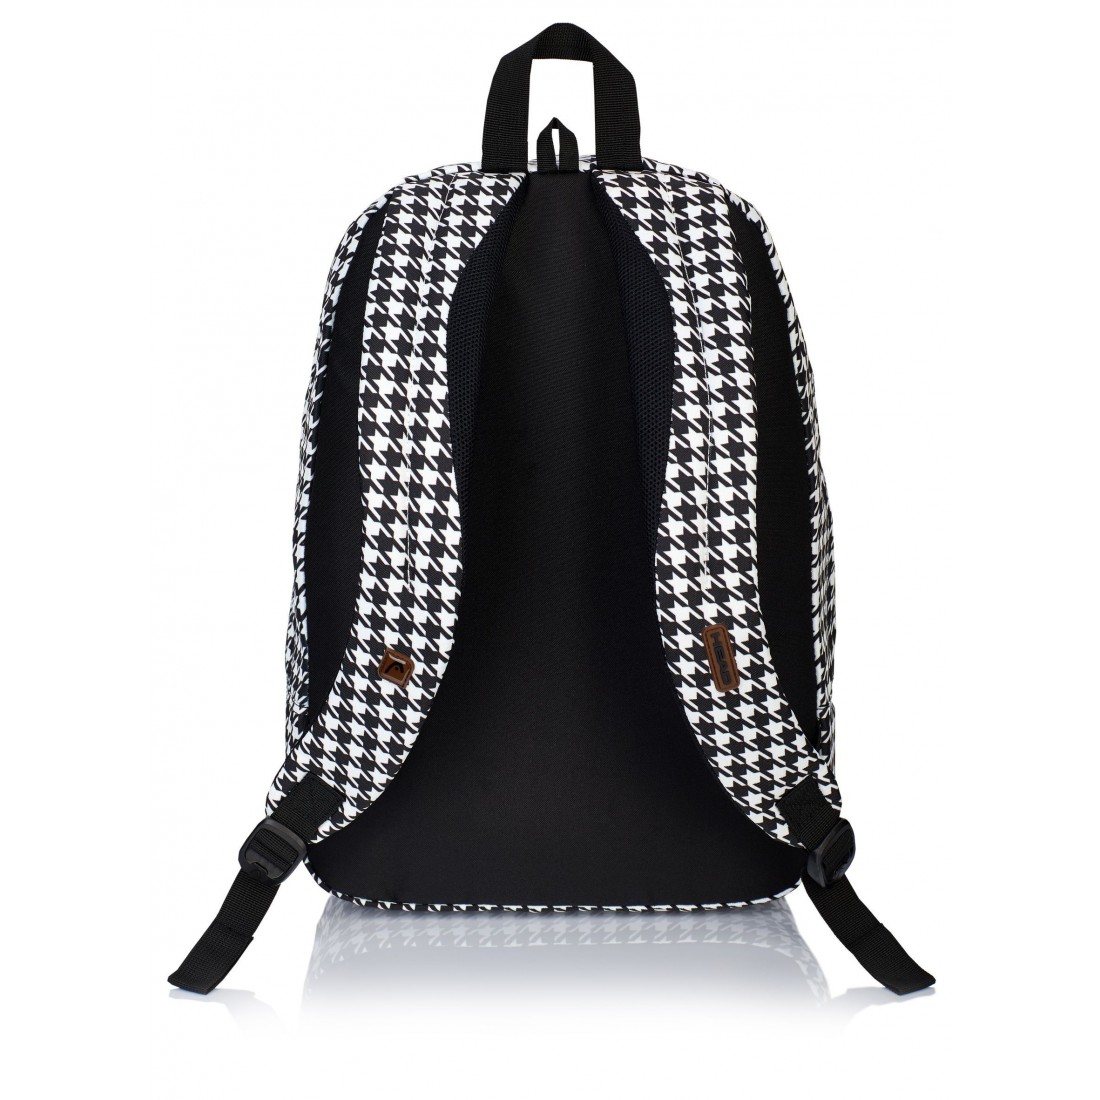 Plecak szkolny w pepitkę czarno-biały miejski styl HEAD HD-53 - plecak-tornister.pl